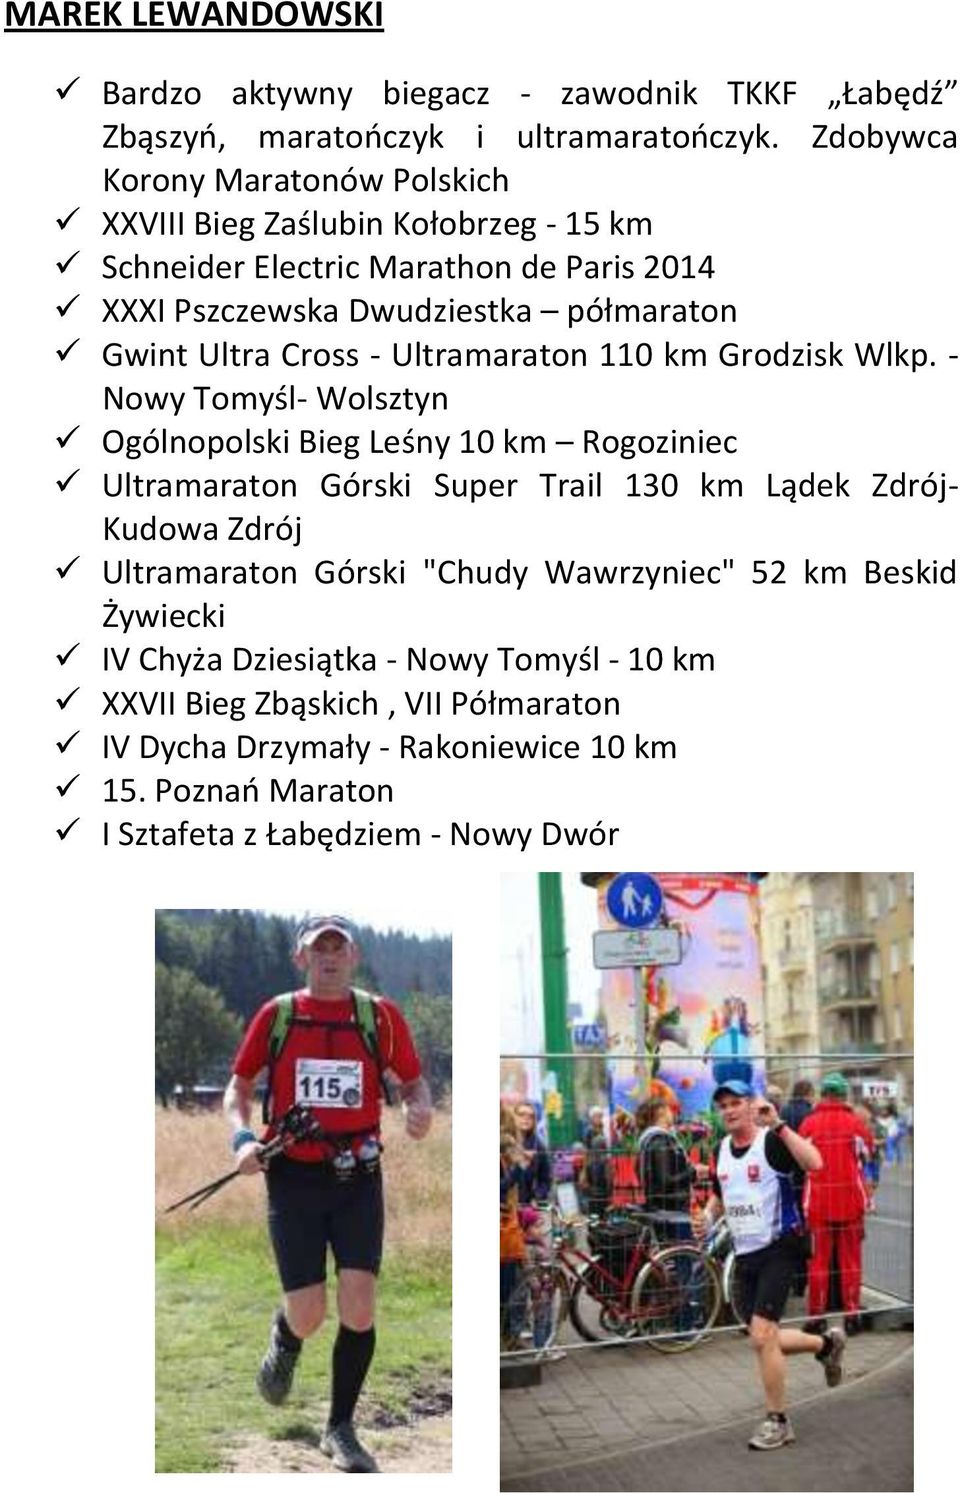 Cross - Ultramaraton 110 km Grodzisk Wlkp.